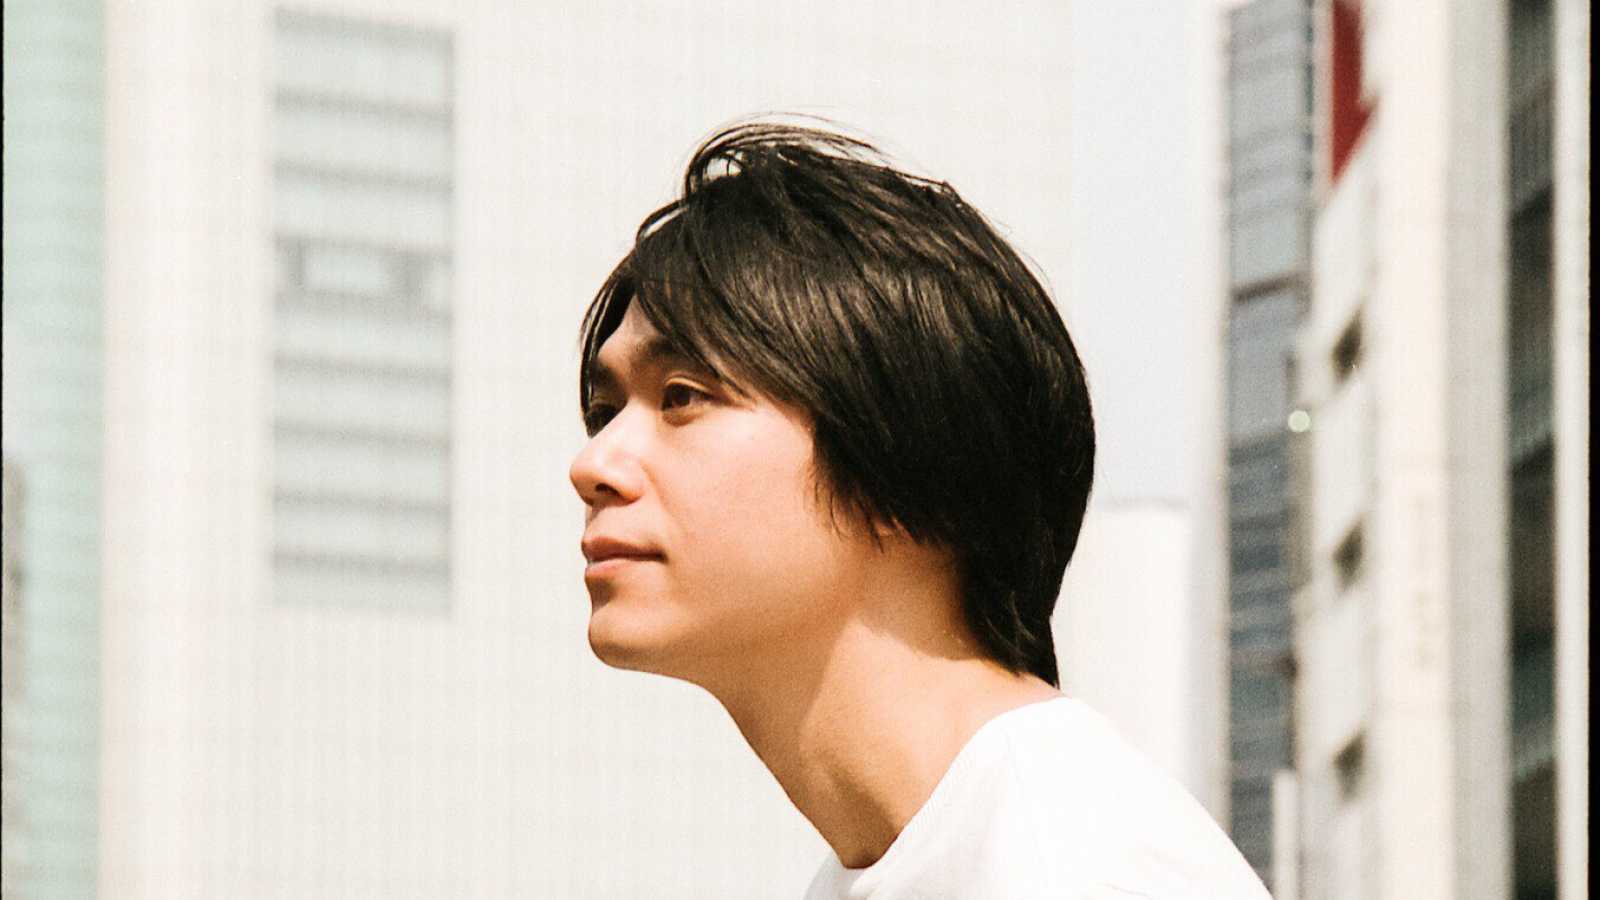 Oyamada Sohei zapowiada nowy cyfrowy singiel i pierwszy solowy album © Oyamada Sohei. All rights reserved.